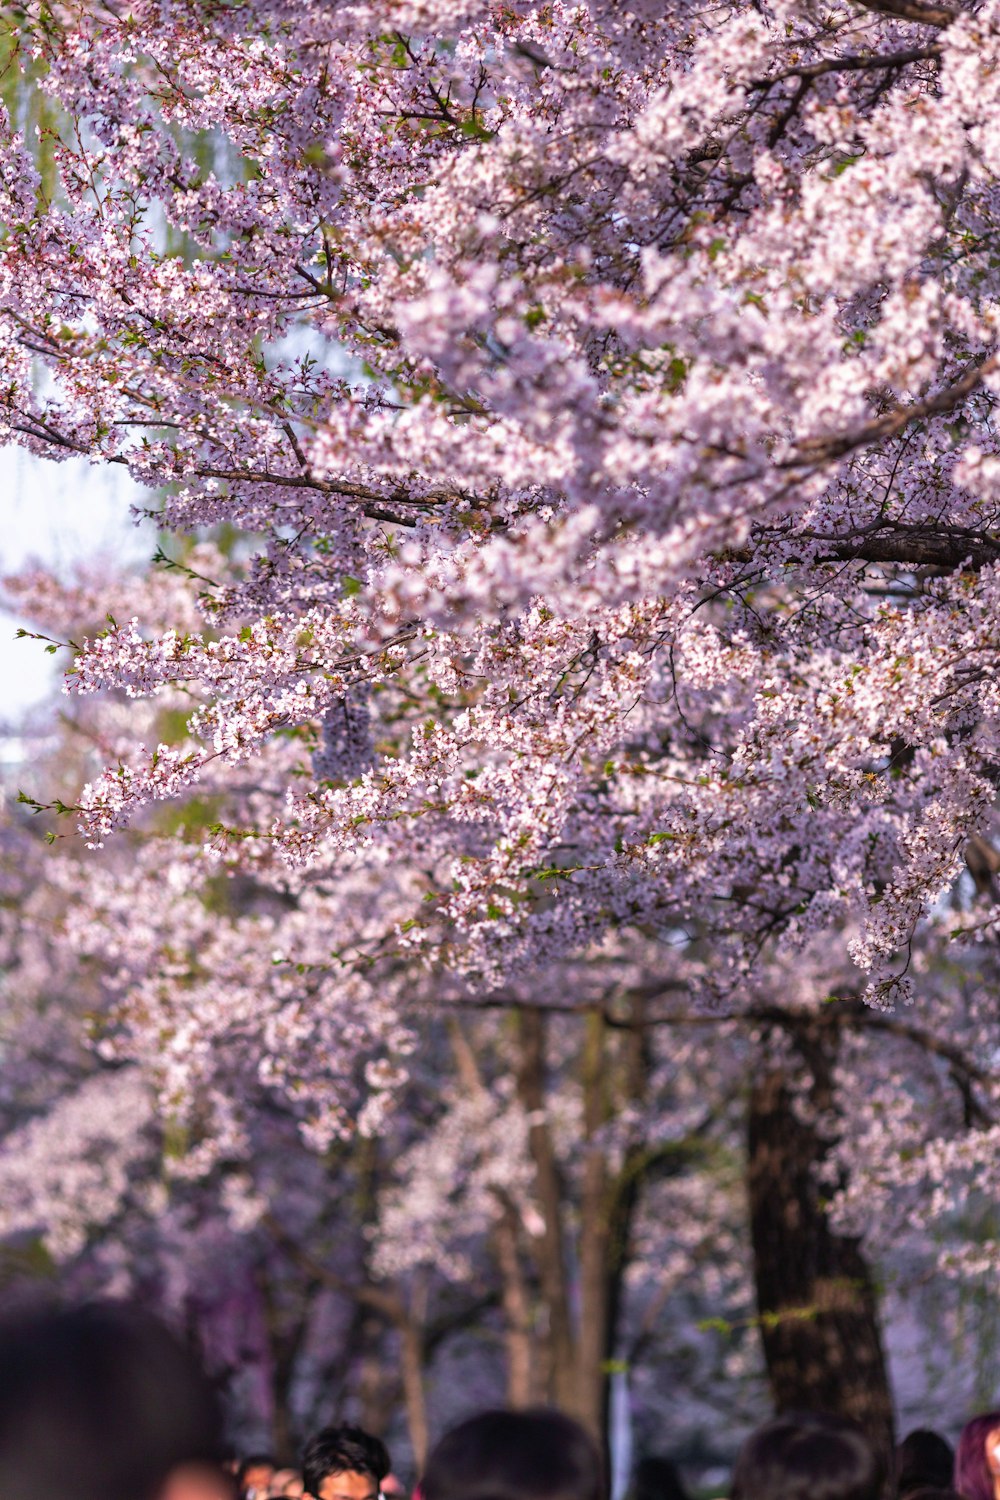 분홍색 꽃이 만발한 나무 아래에 서 있는 한 무리의 사람들